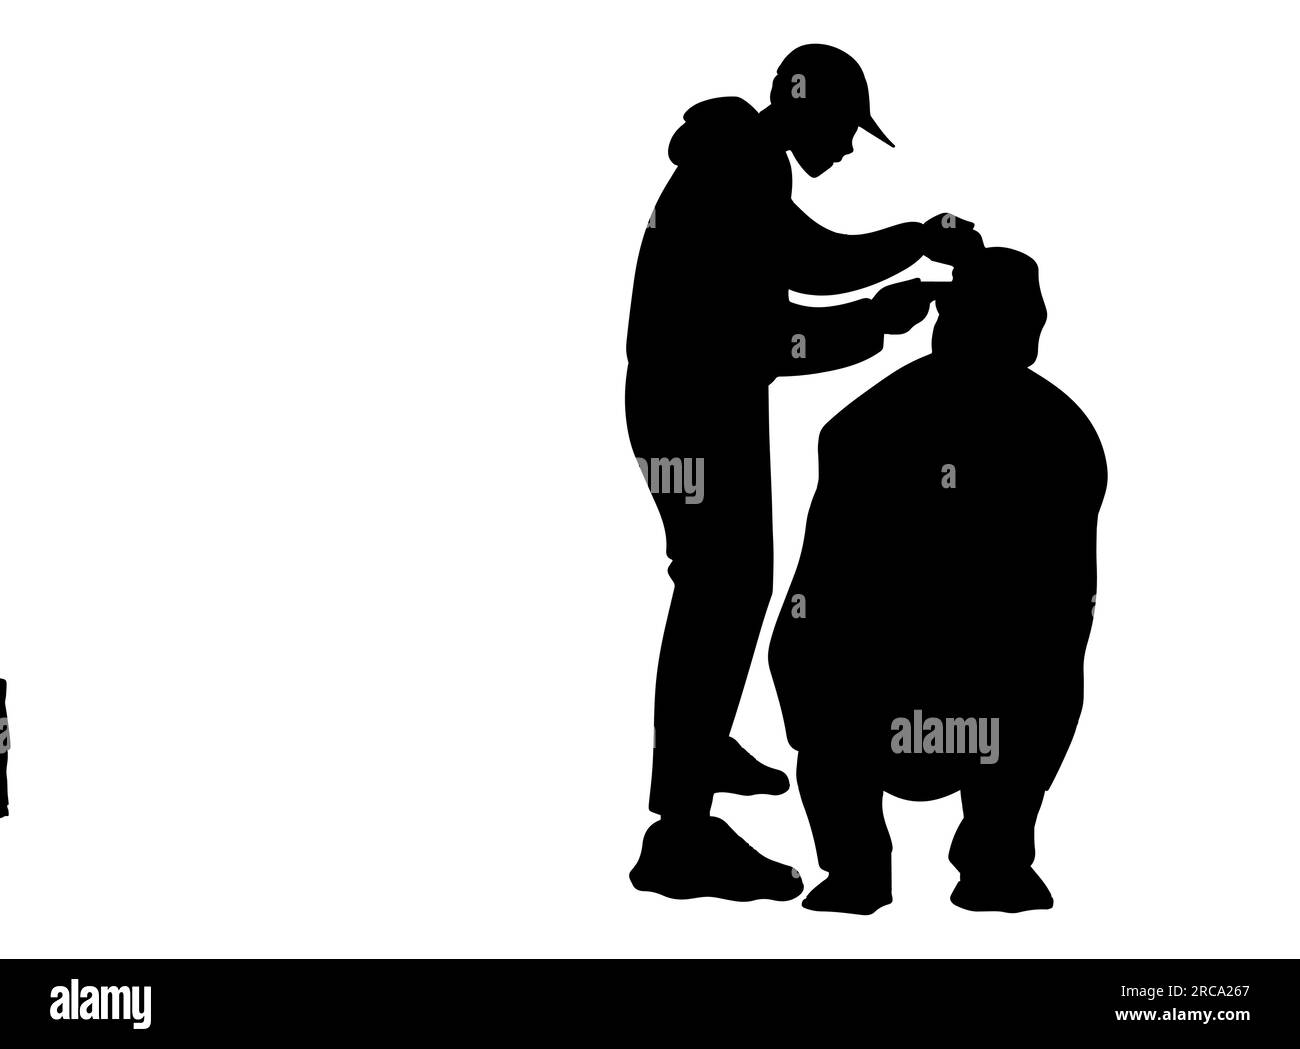 Silueta negra de un peluquero cortando el pelo de un cliente masculino. Estilista que sirve al cliente en la peluquería, vector aislado sobre fondo blanco Ilustración del Vector